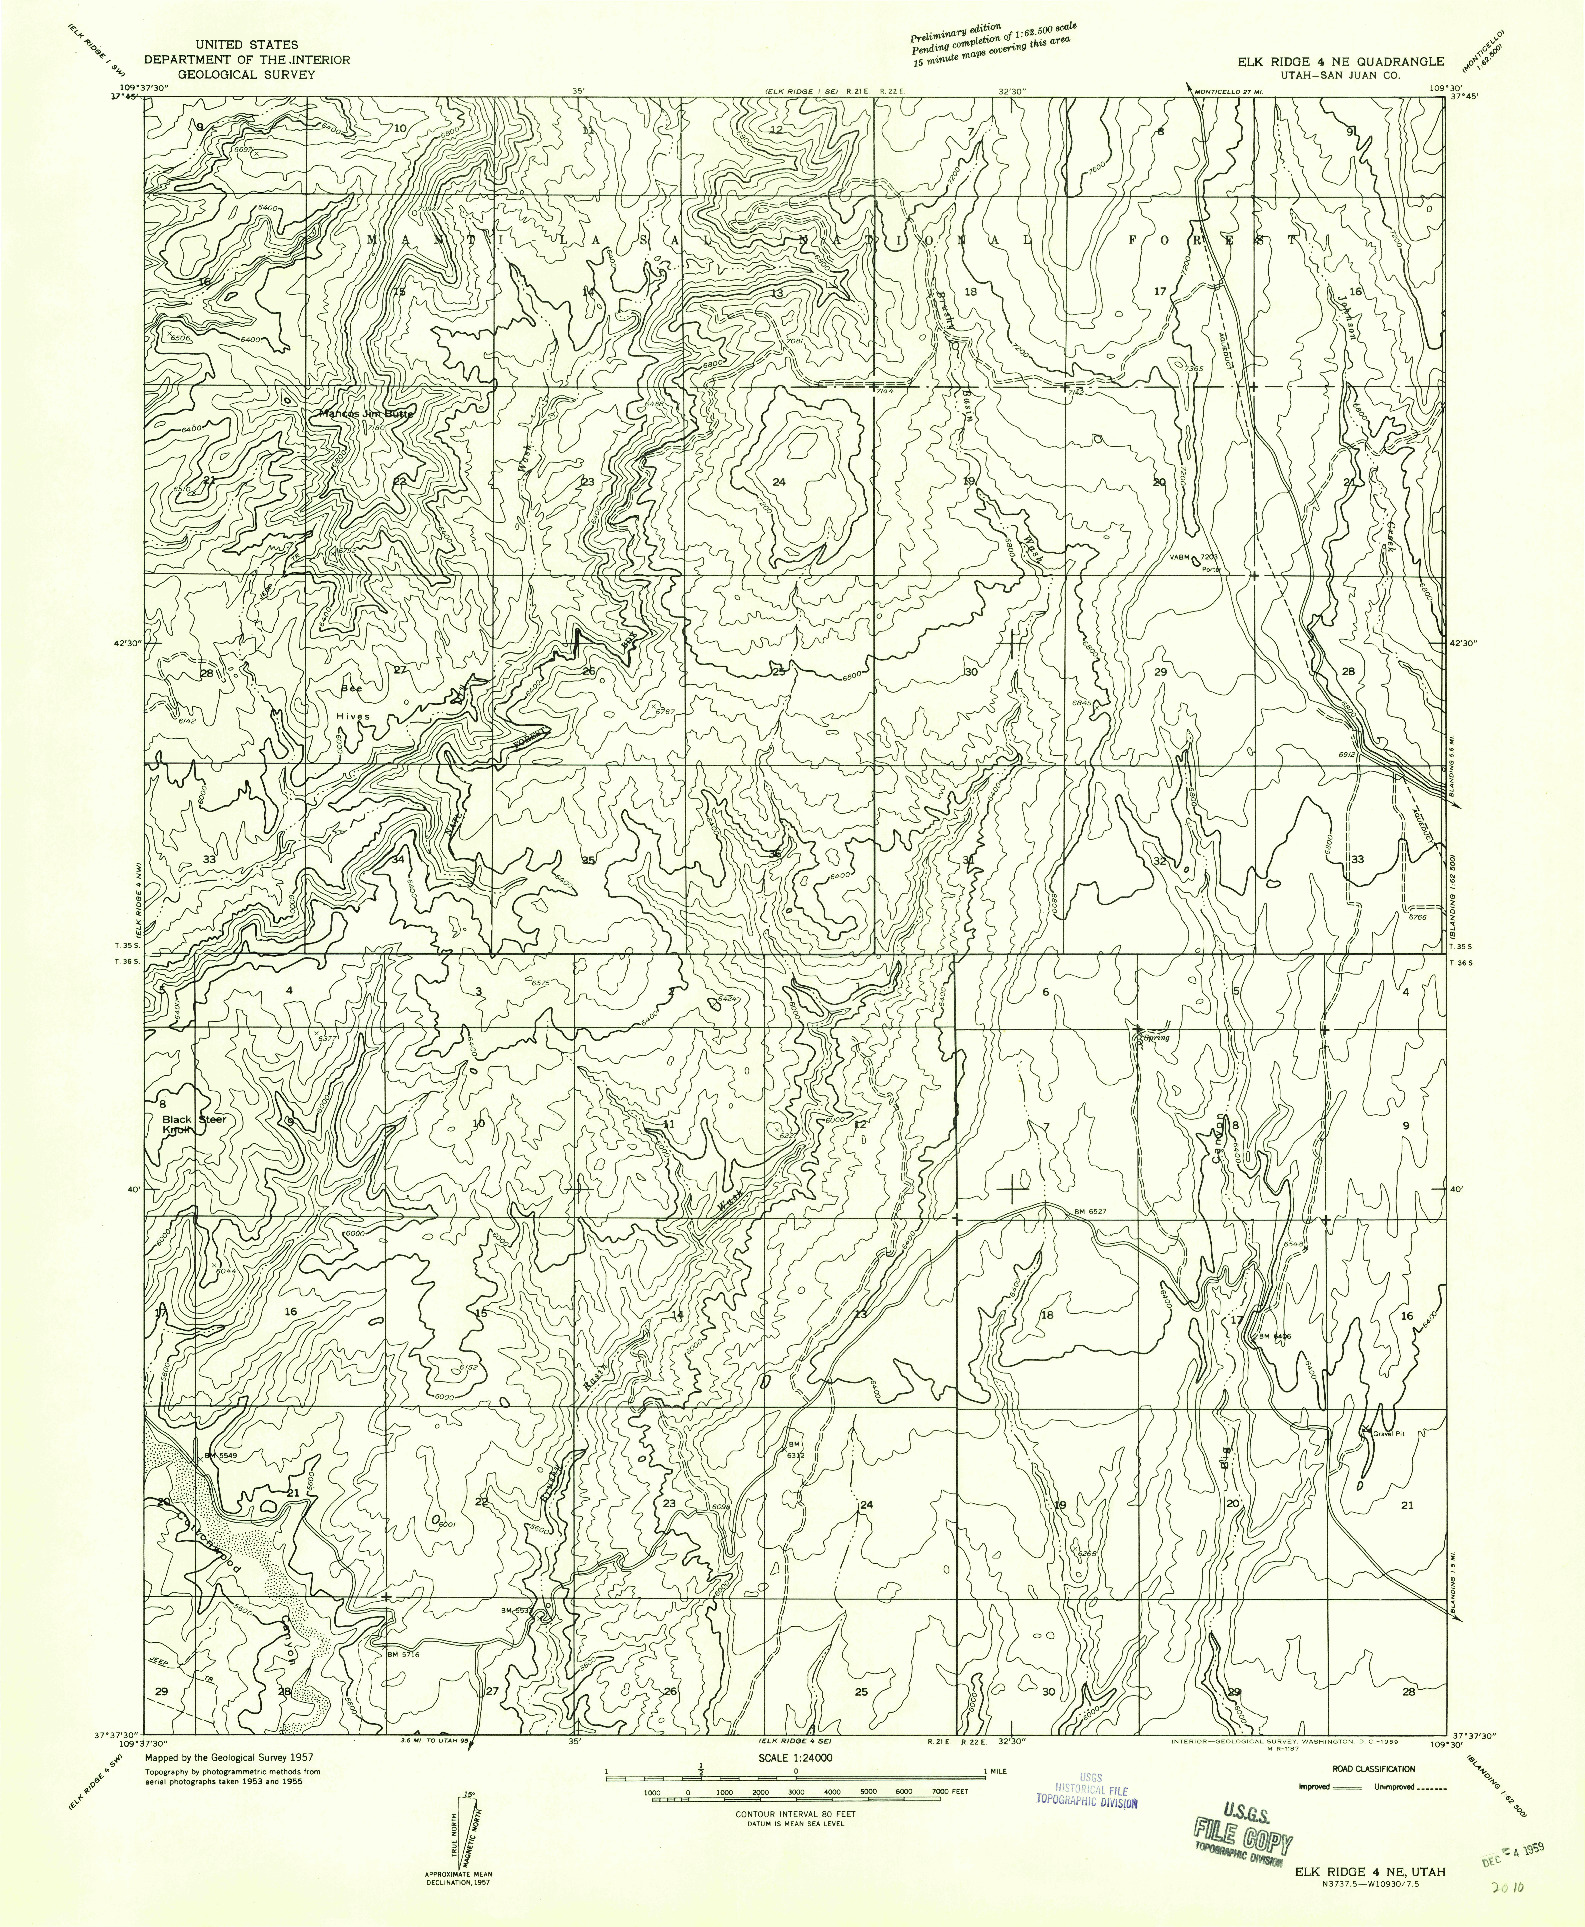 USGS 1:24000-SCALE QUADRANGLE FOR ELK RIDGE 4 NE, UT 1957